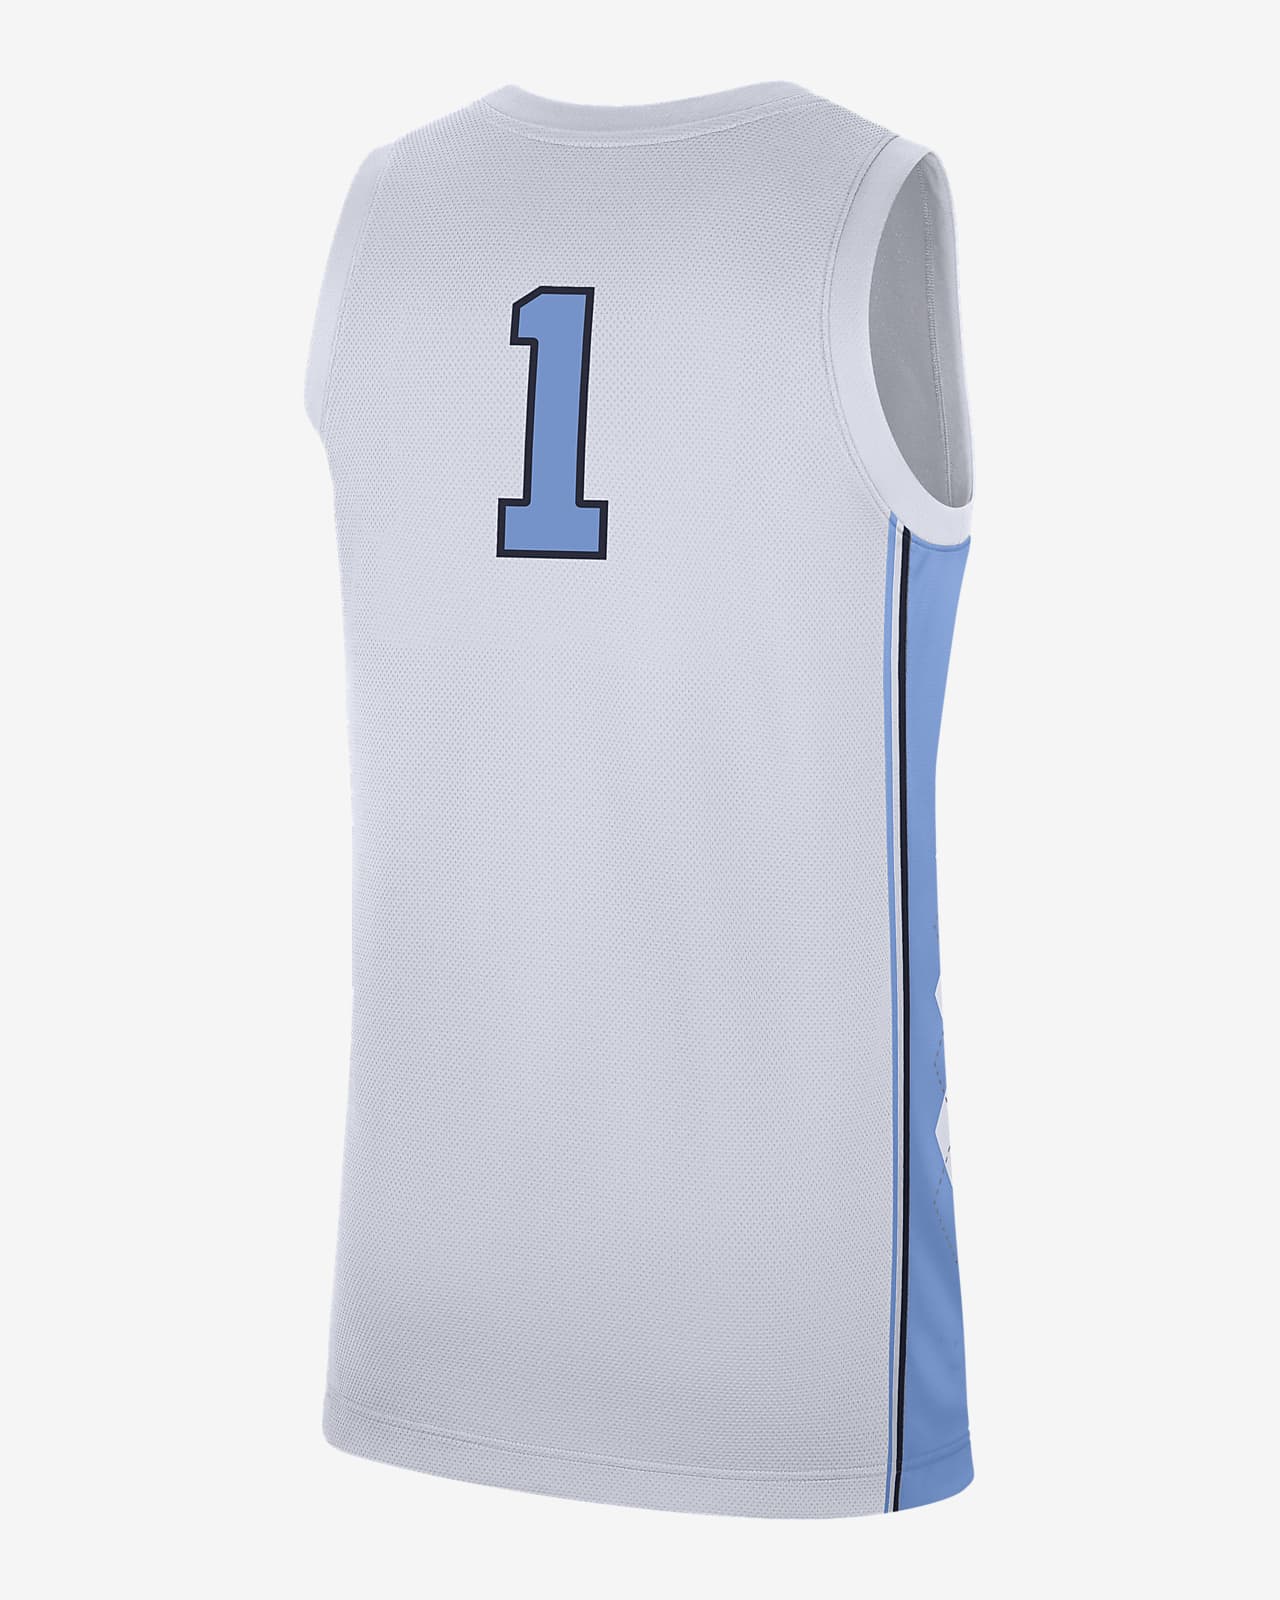 personalized unc basketball jersey